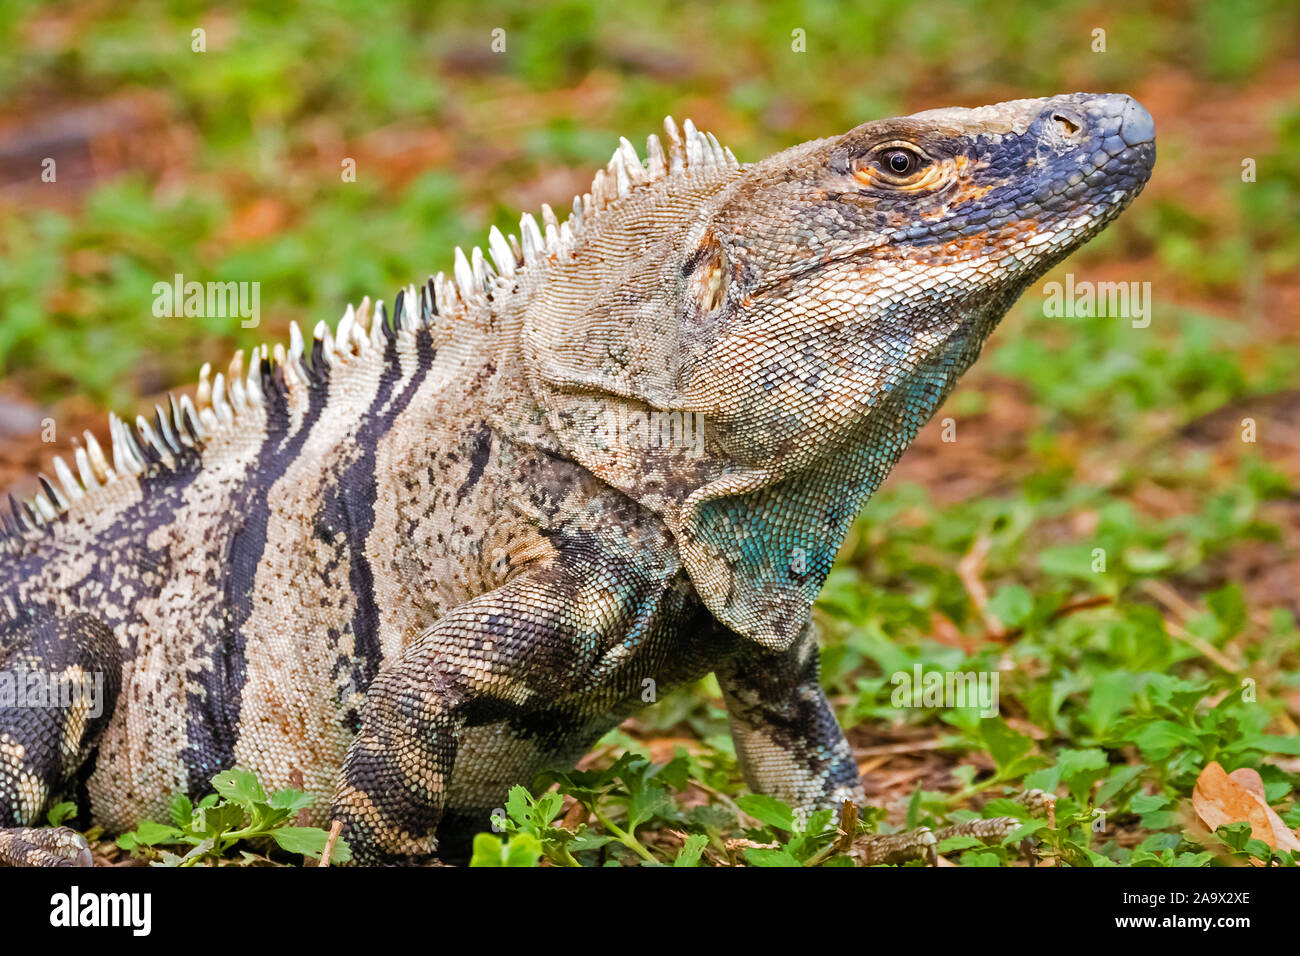 Mittelamerika, Costa Rica, Iguana iguana, Leguan, Gruener Leguan, Stock Photo